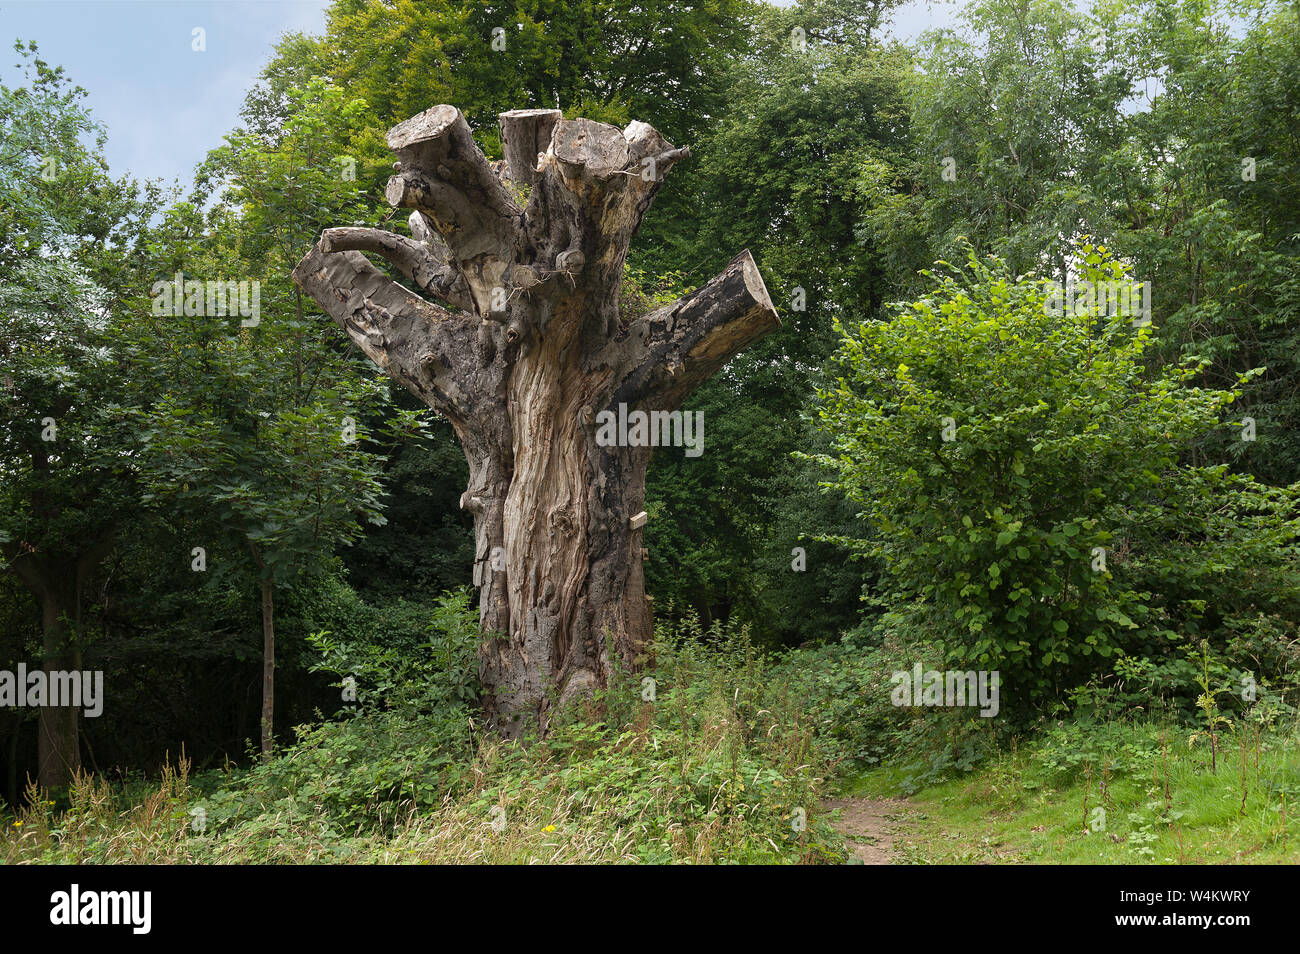 La gestion des forêts, sympathique Dead Horse Chestnut Tree, Aesculus hippocastanum, abattu, à rester debout comme habitat pour la faune, les insectes dans les bois Banque D'Images